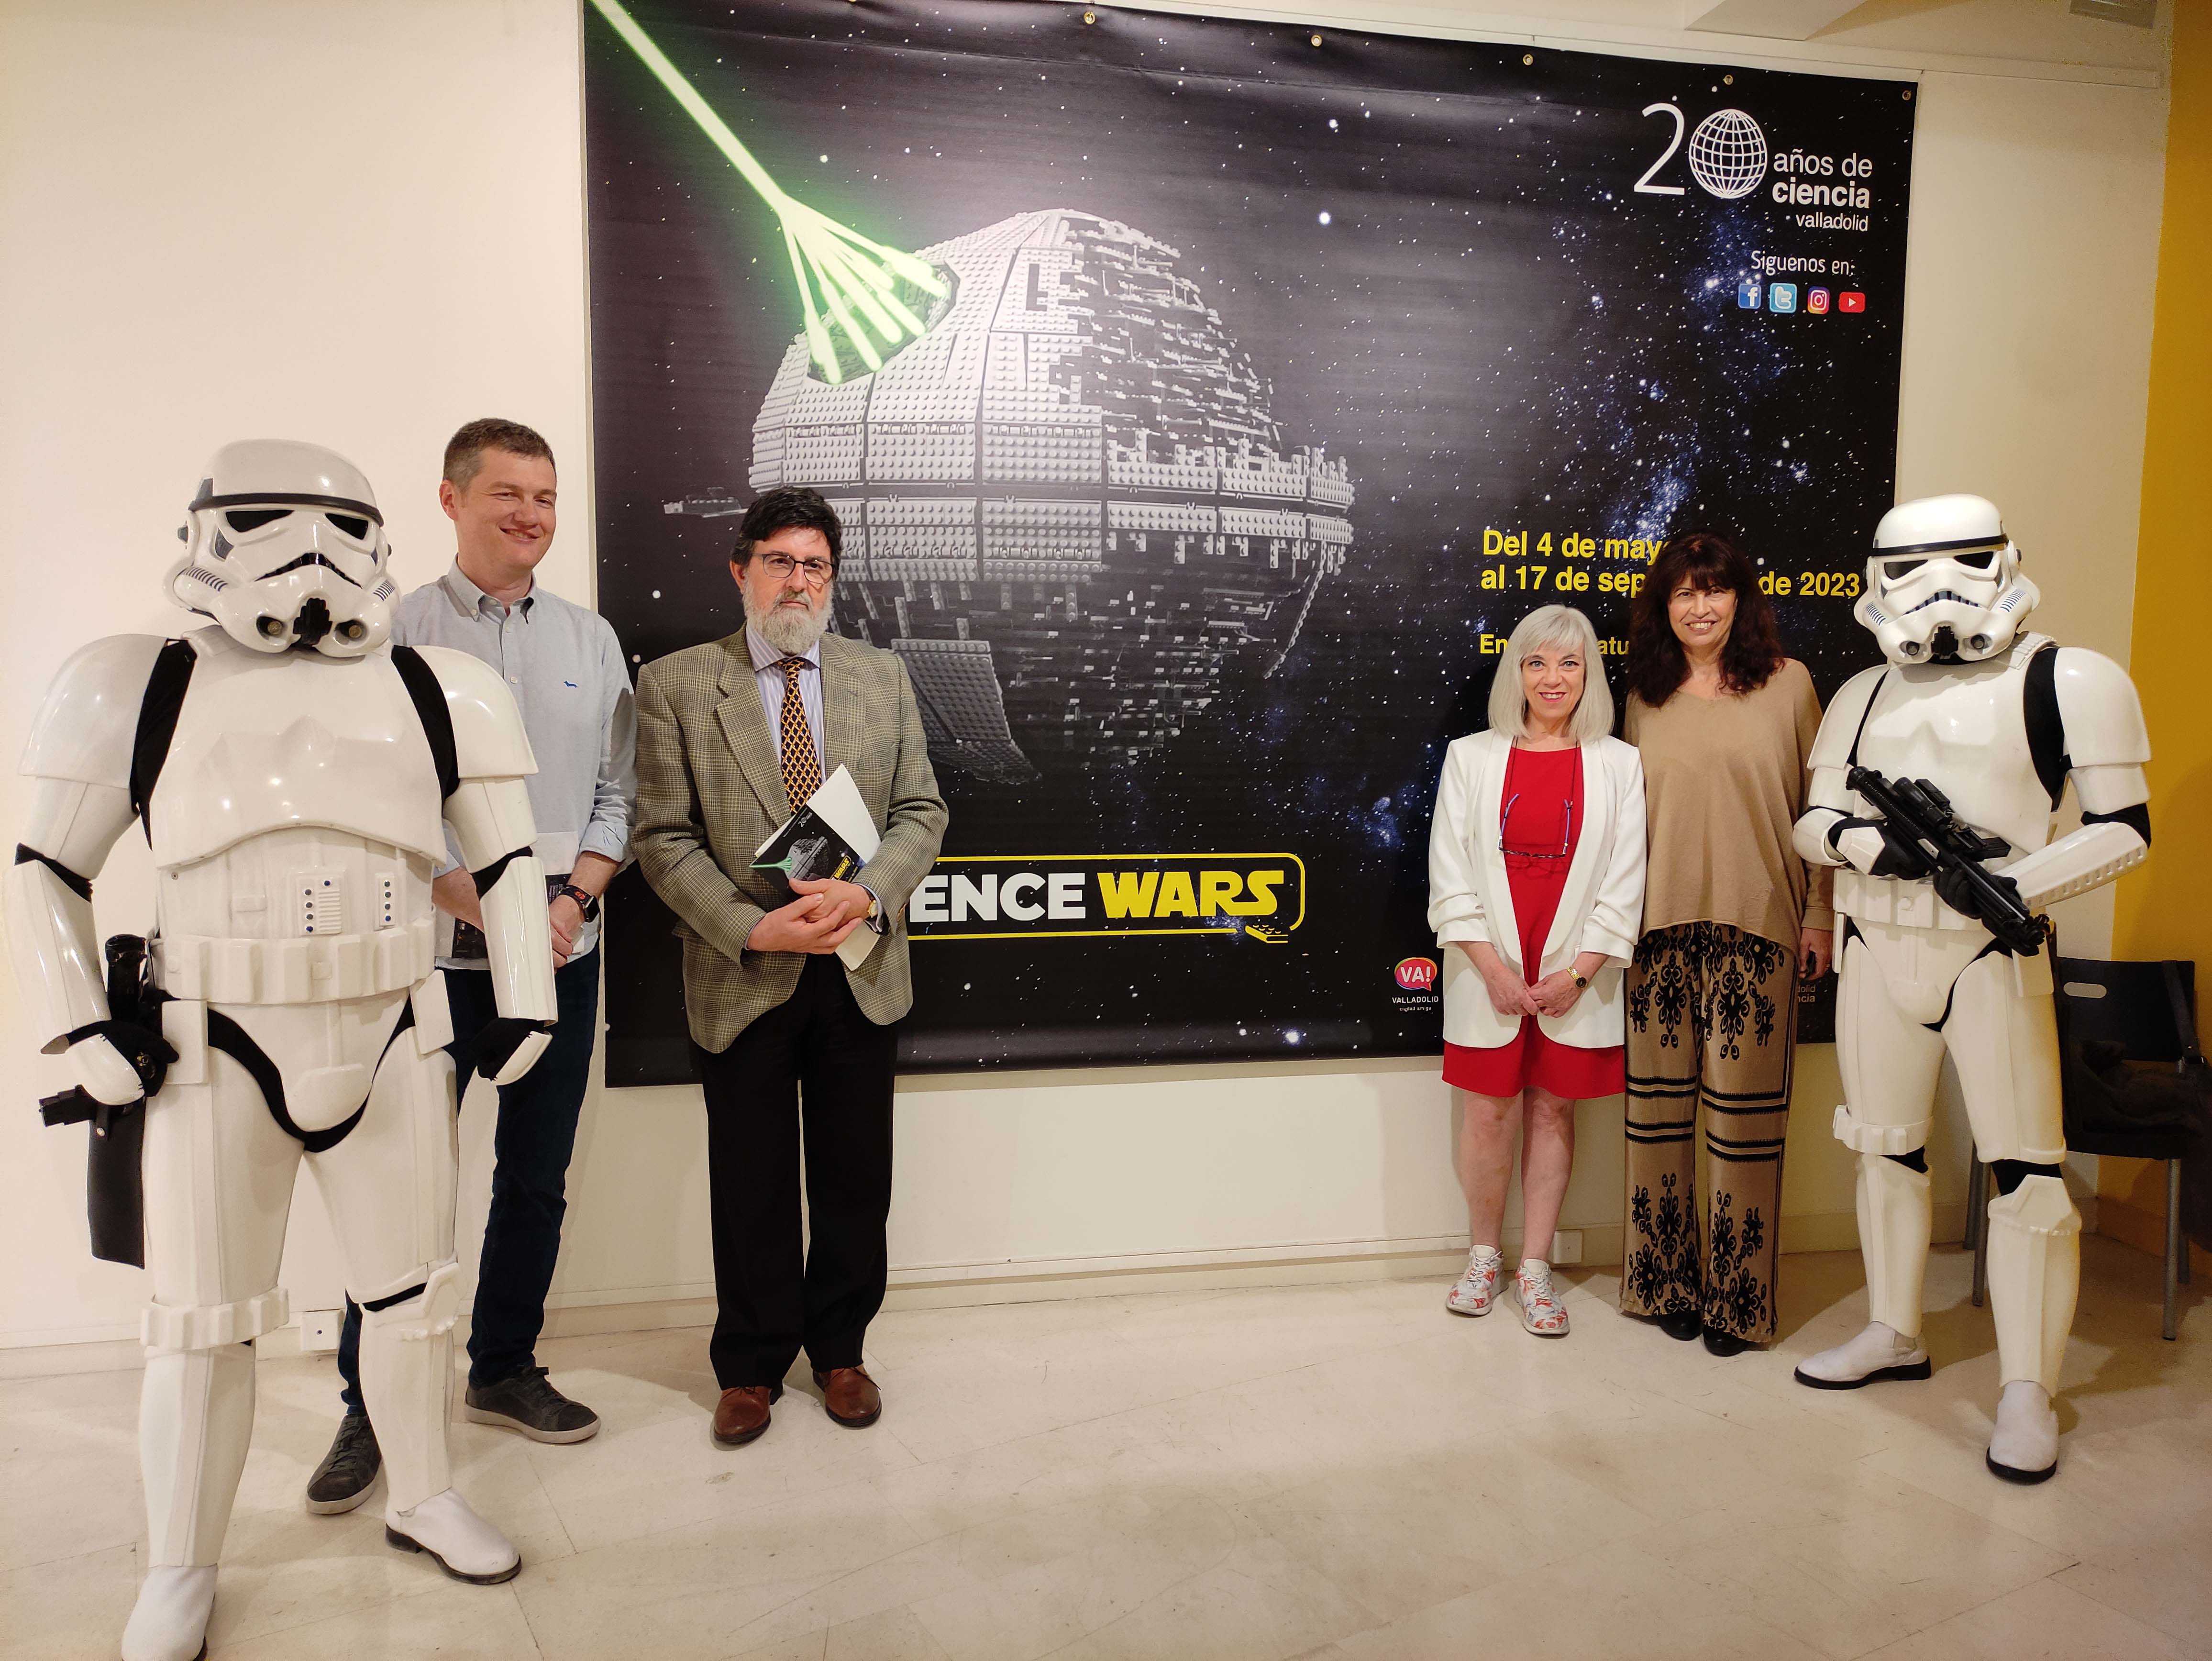 La exposición 'Science Wars' incluye maquetas de construcción de naves y  personajes, y ayuda a interpretar la ciencia de Star Wars